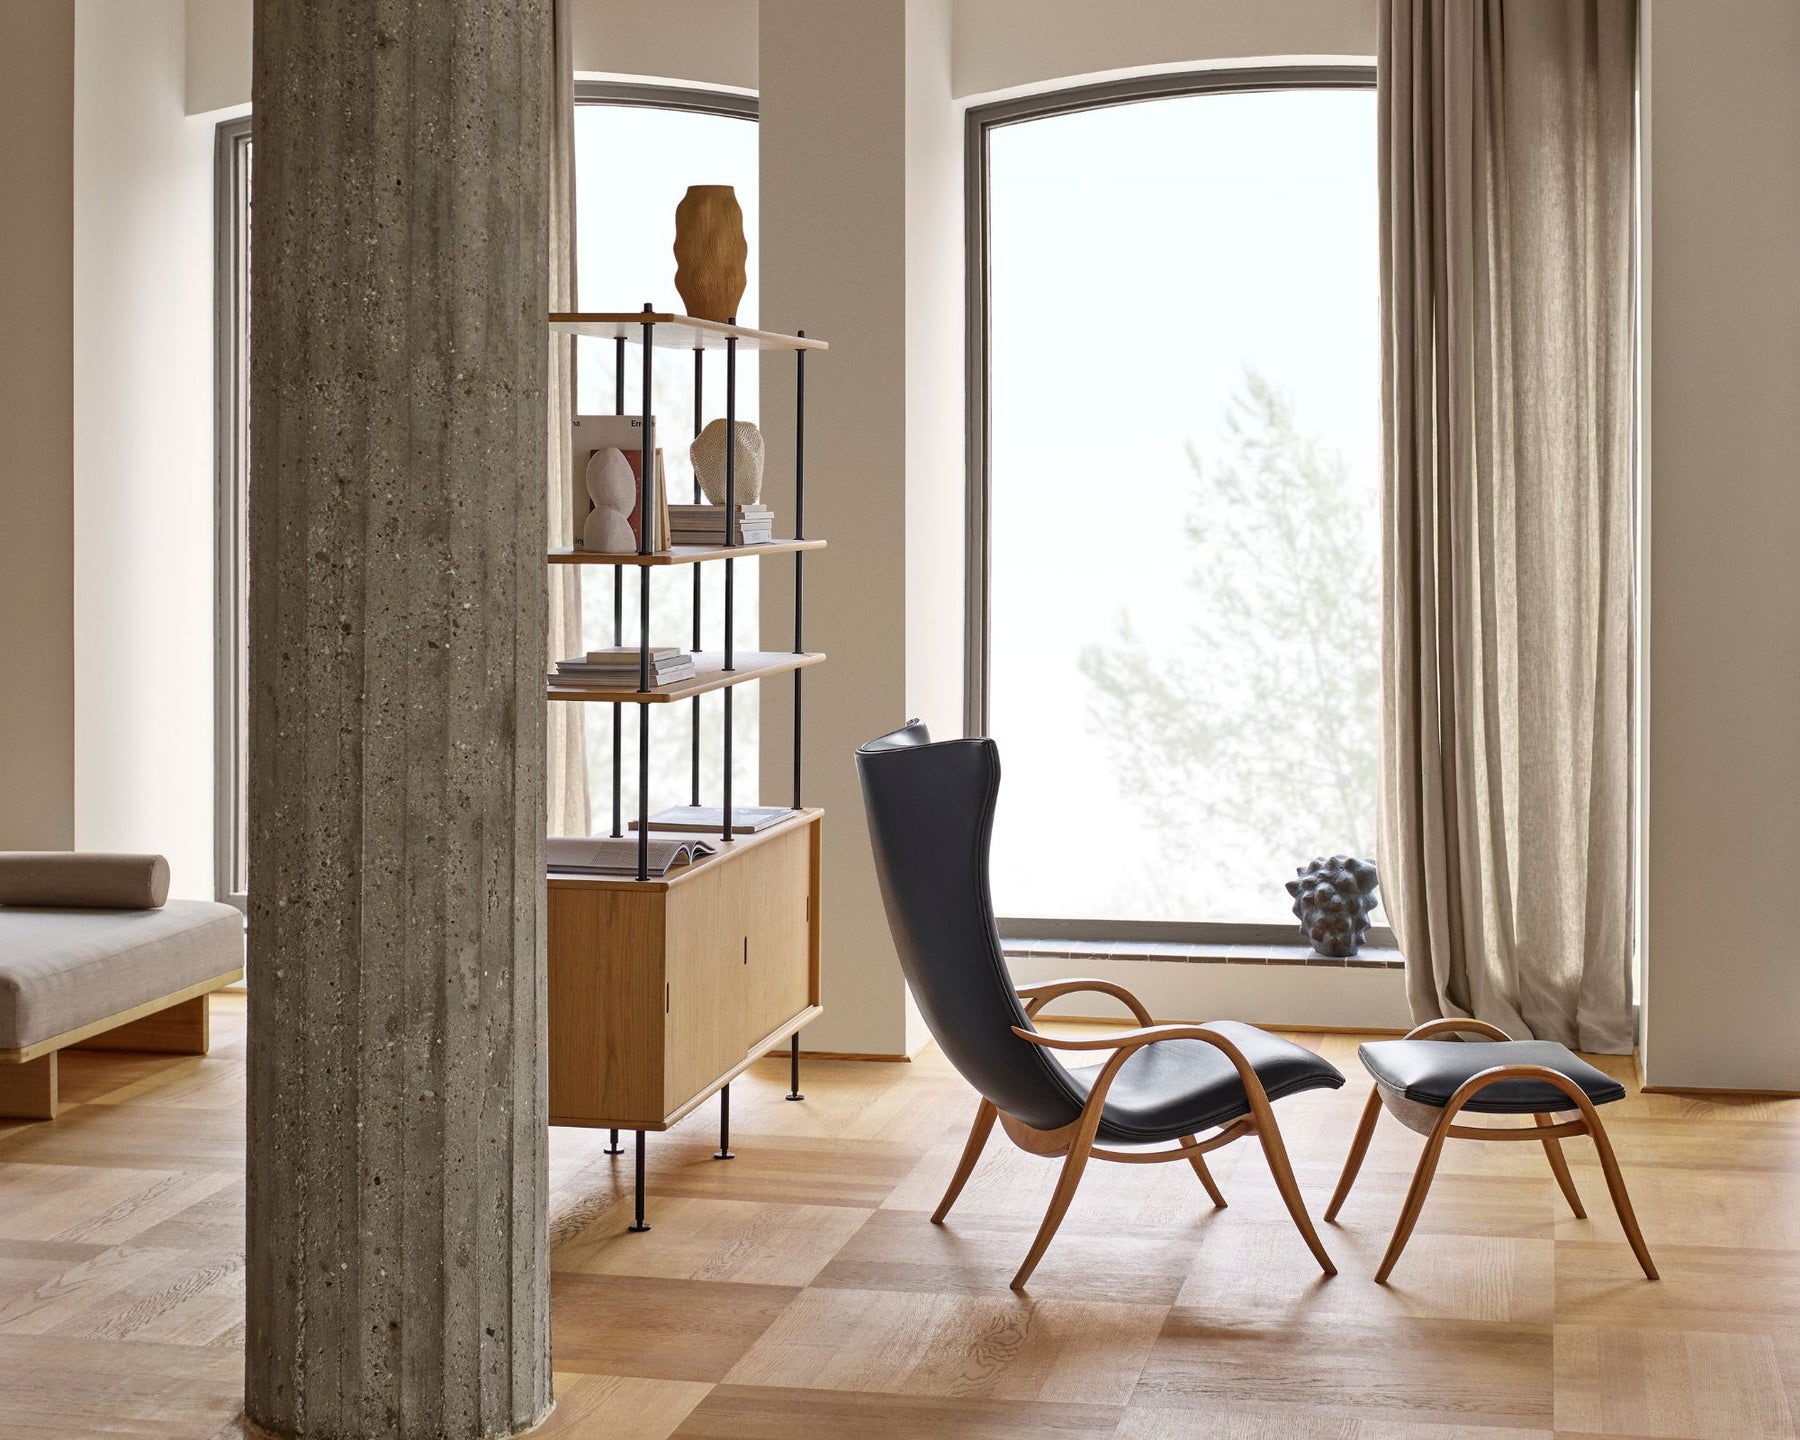 Danish Modern Furniture | DSHOP